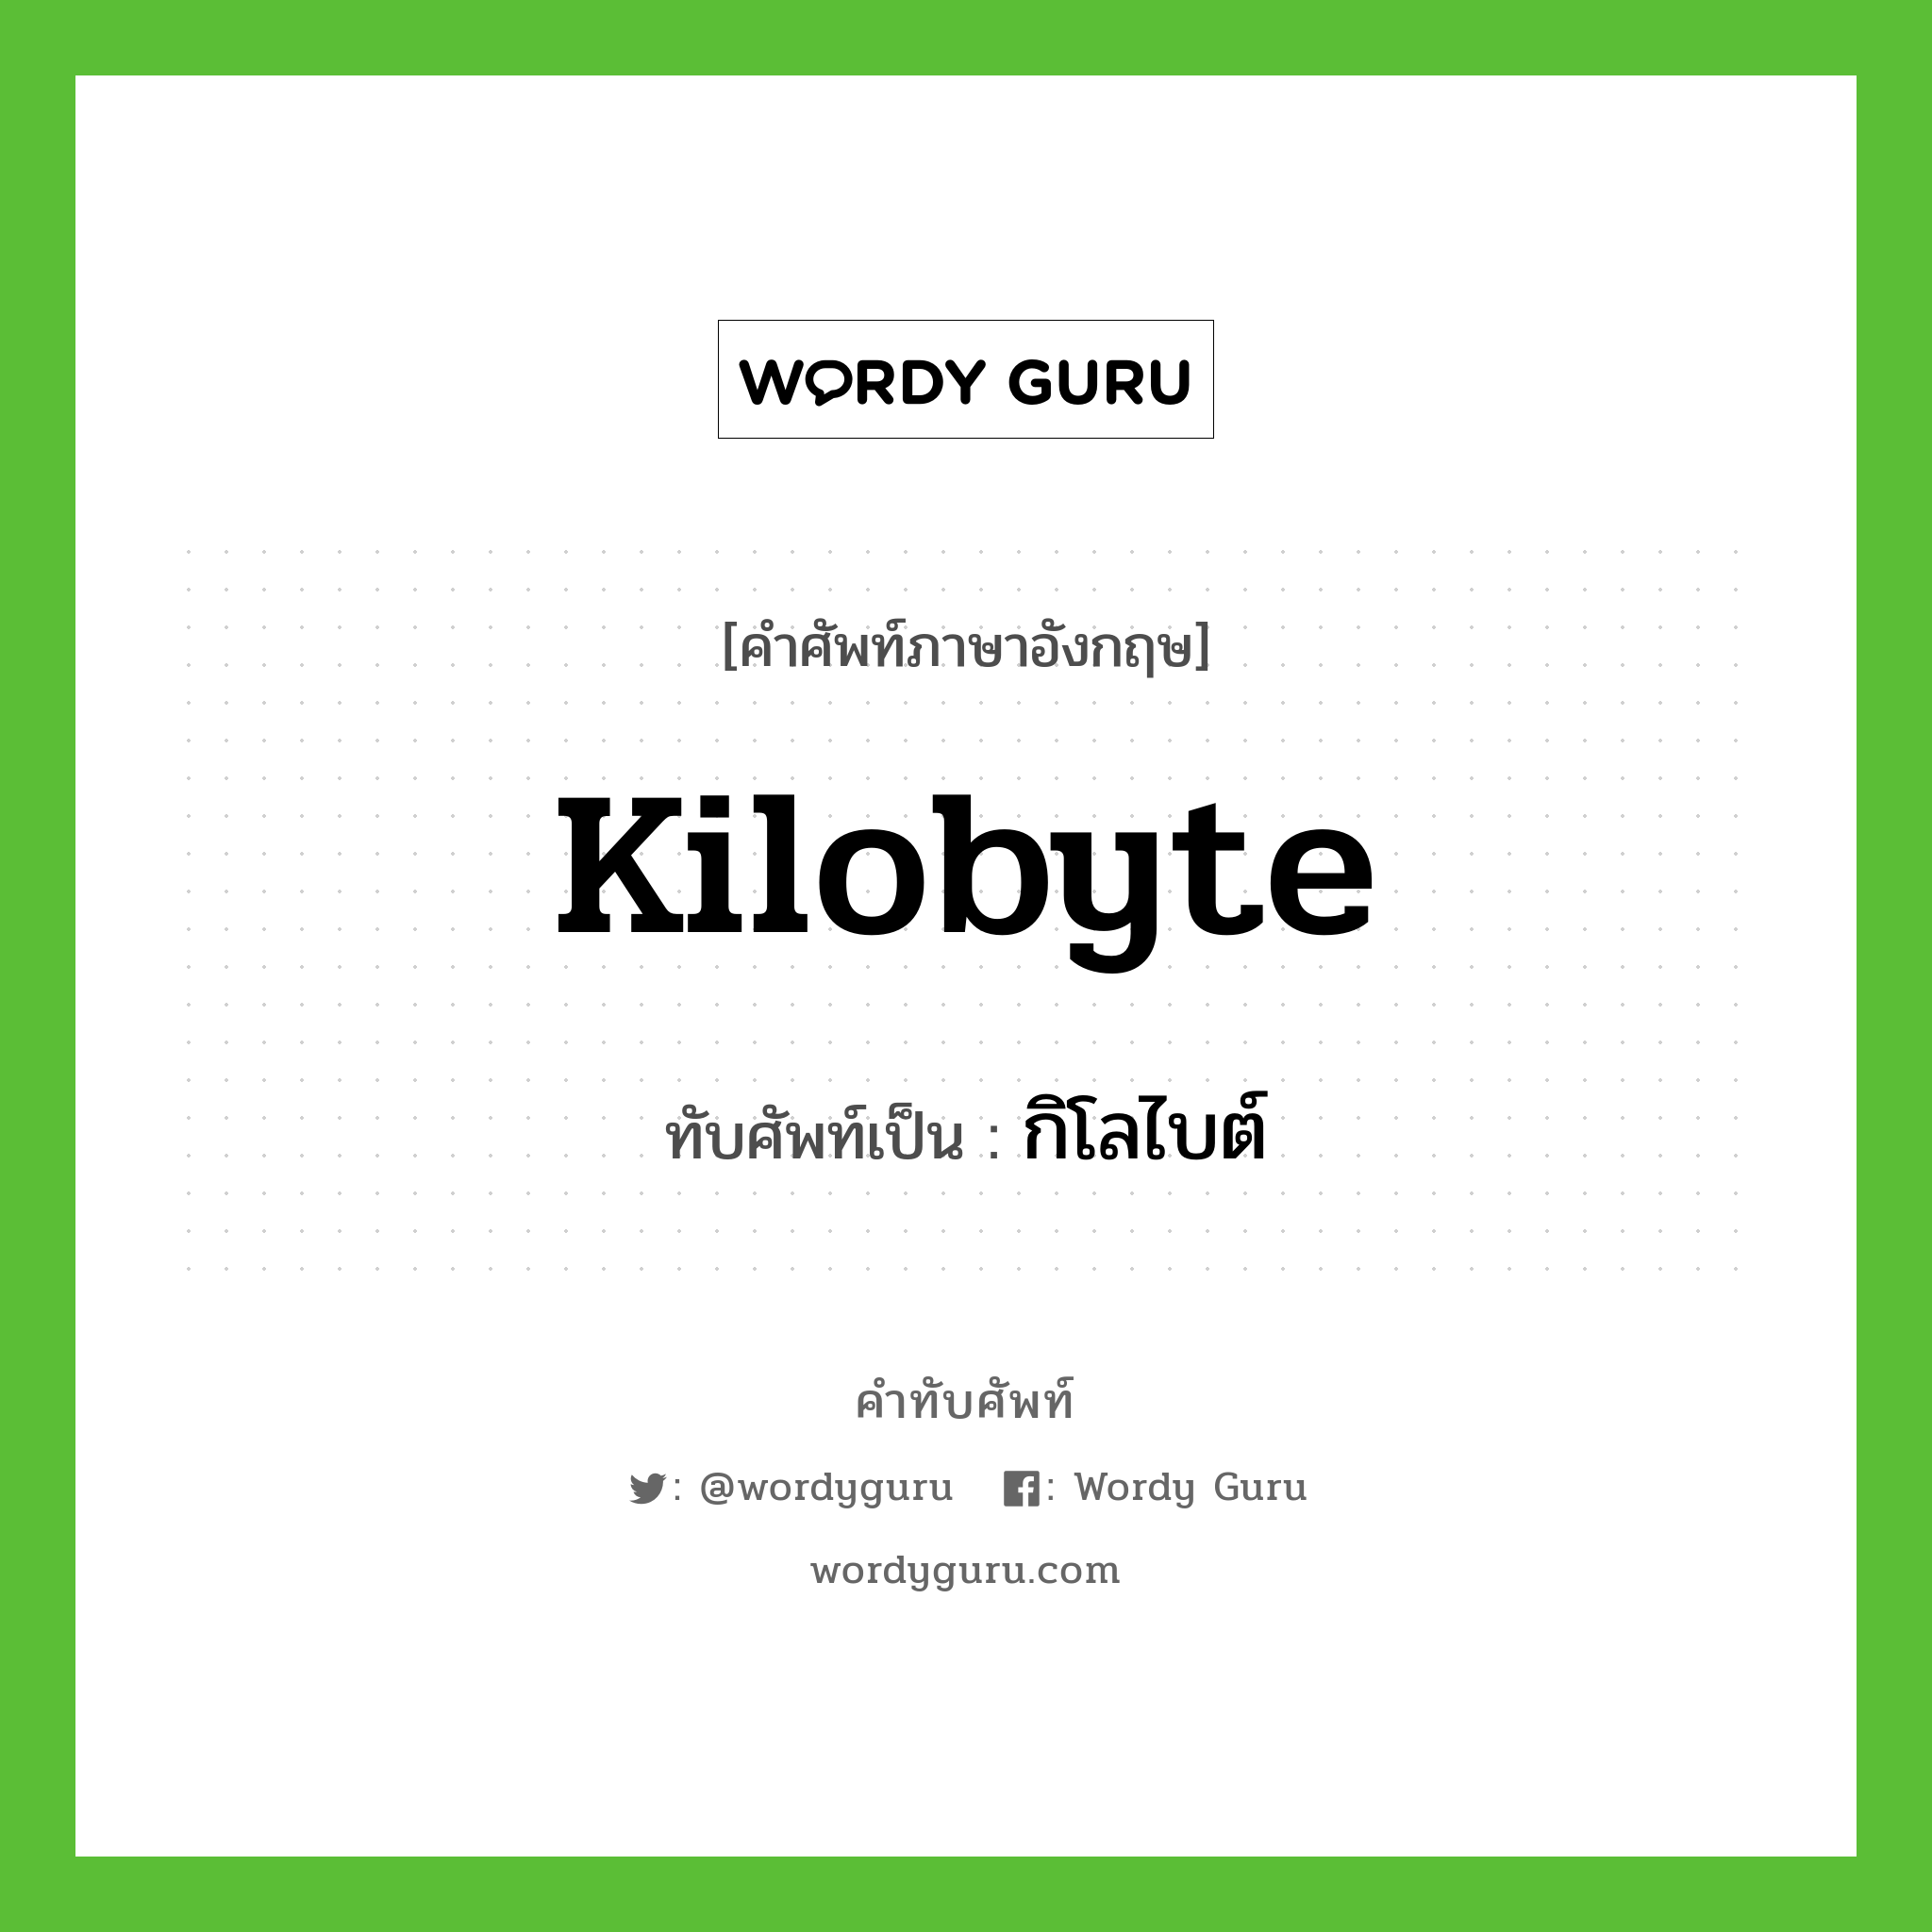 kilobyte เขียนเป็นคำไทยว่าอะไร?, คำศัพท์ภาษาอังกฤษ kilobyte ทับศัพท์เป็น กิโลไบต์